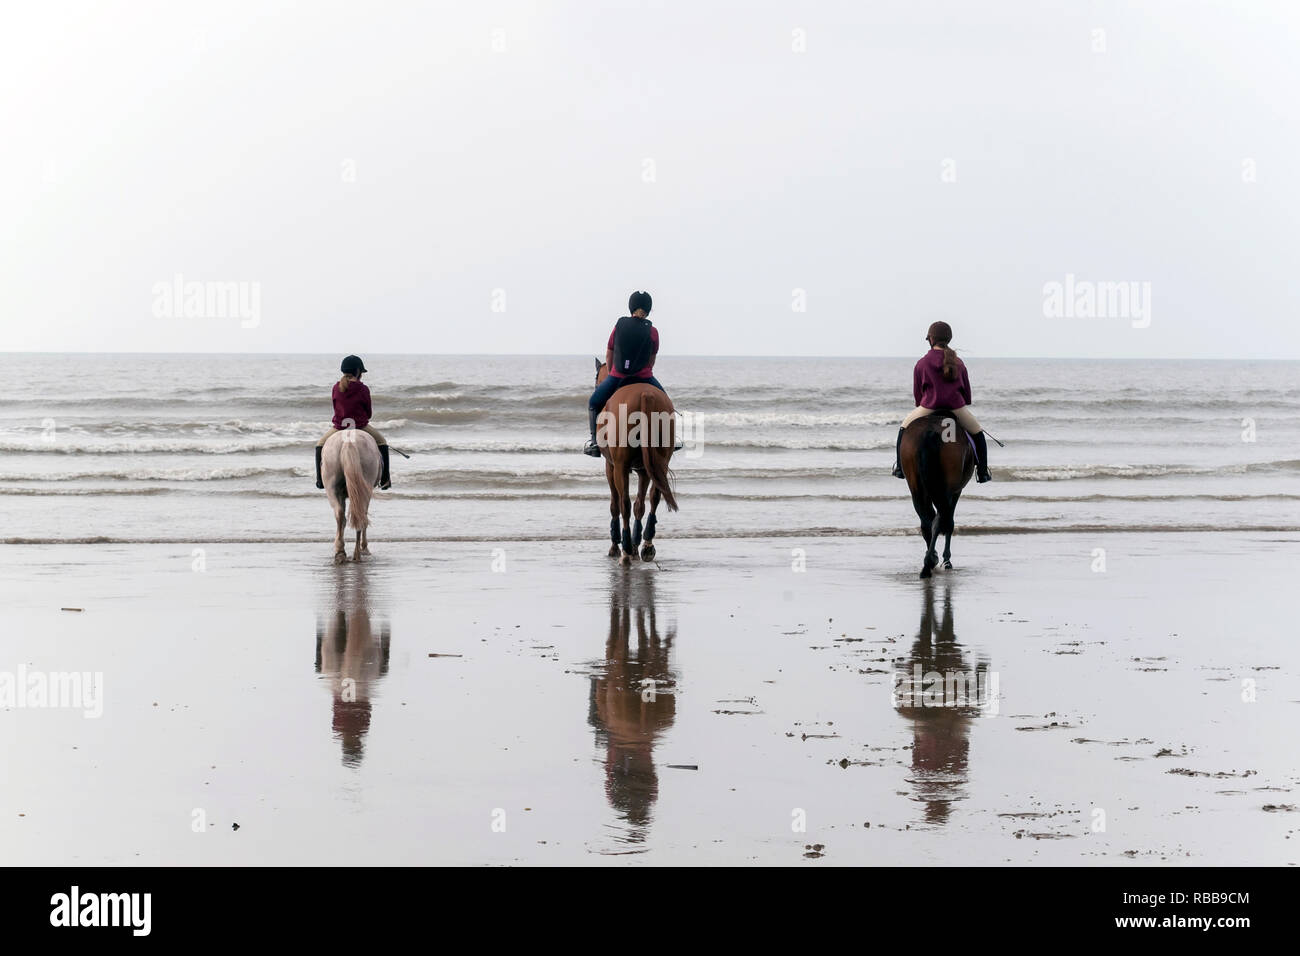 Three horses on beach ride. Stock Photo